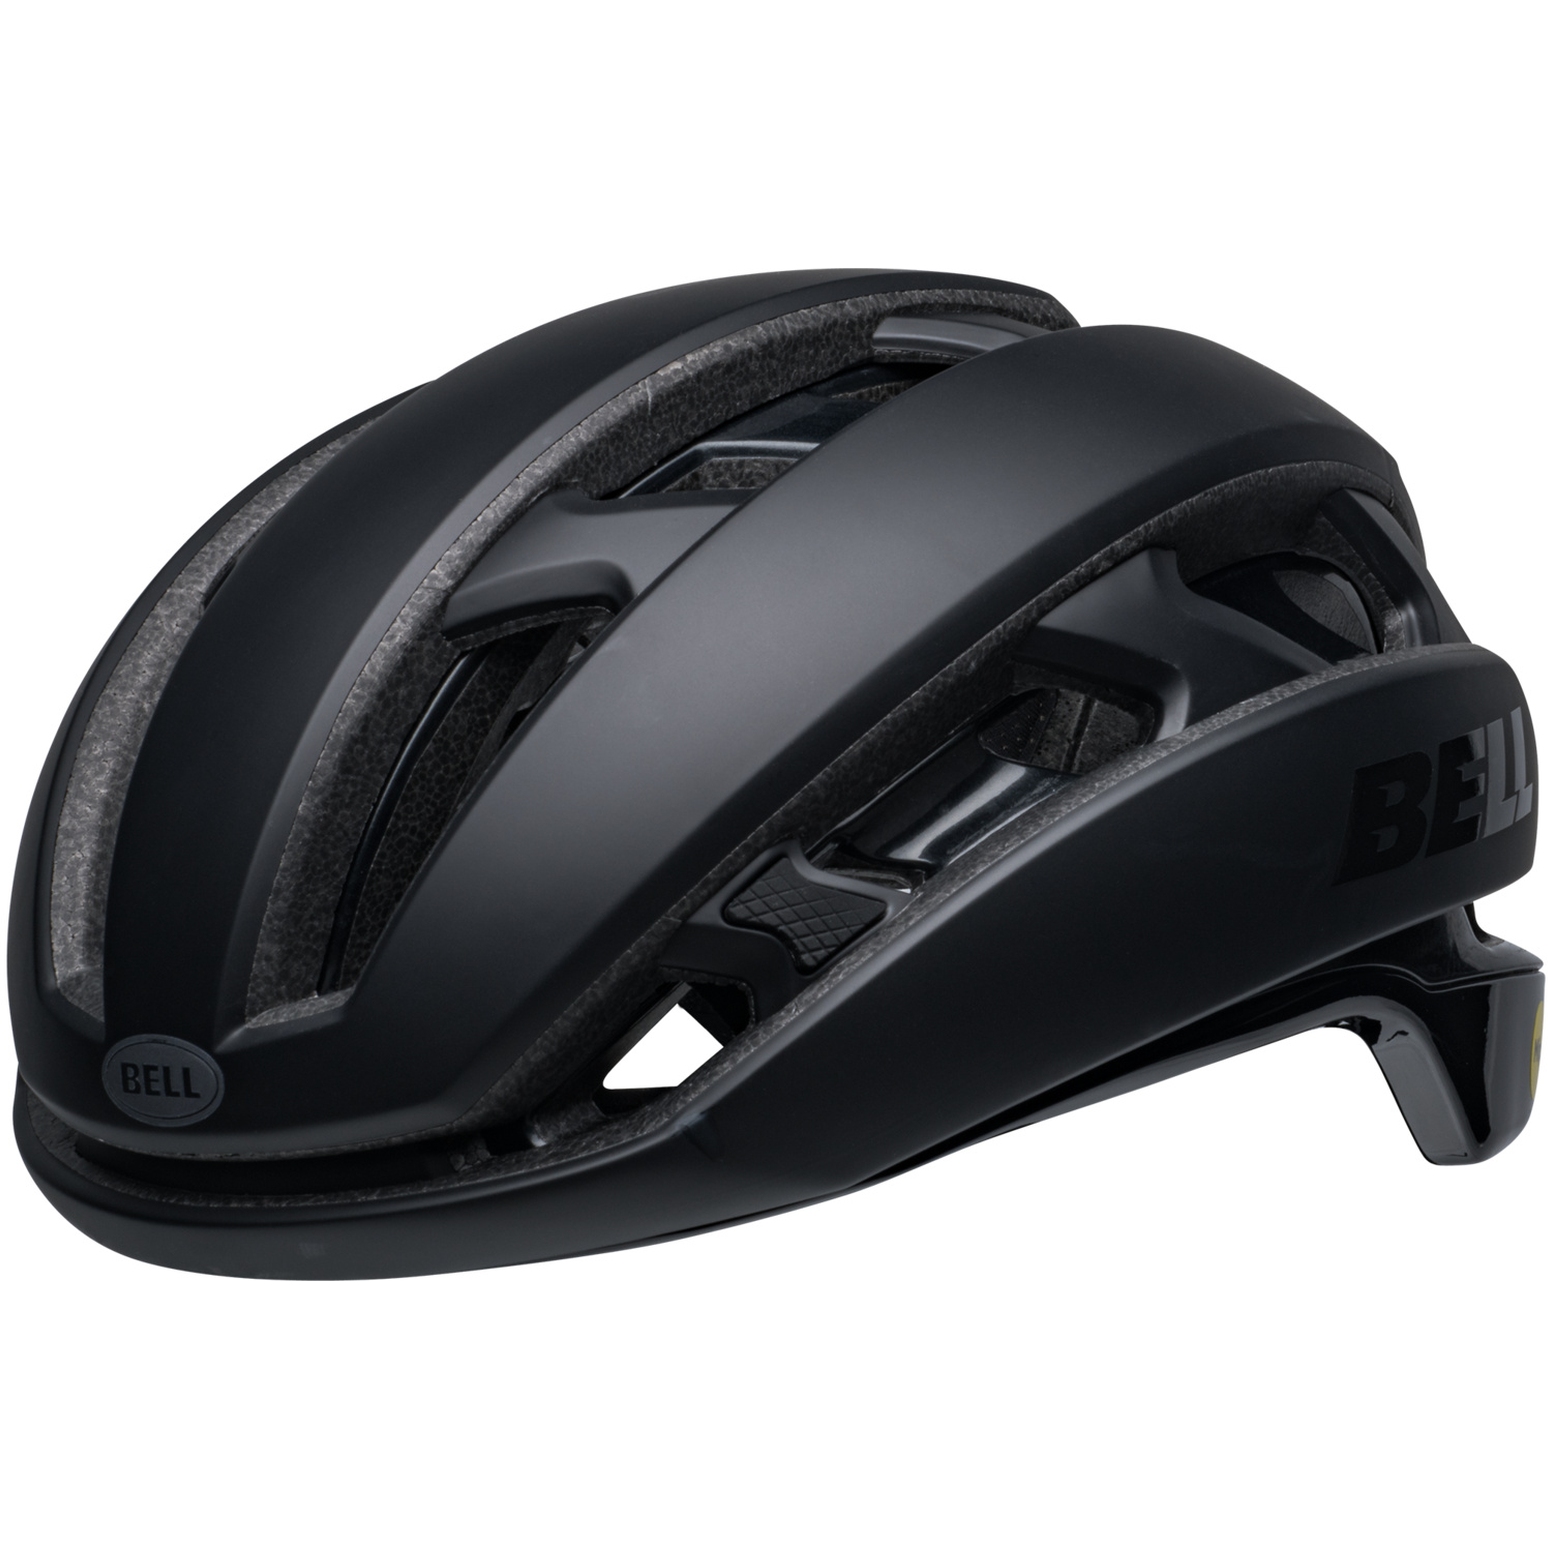 Productfoto van Bell XR Spherical Helm - matte/gloss black